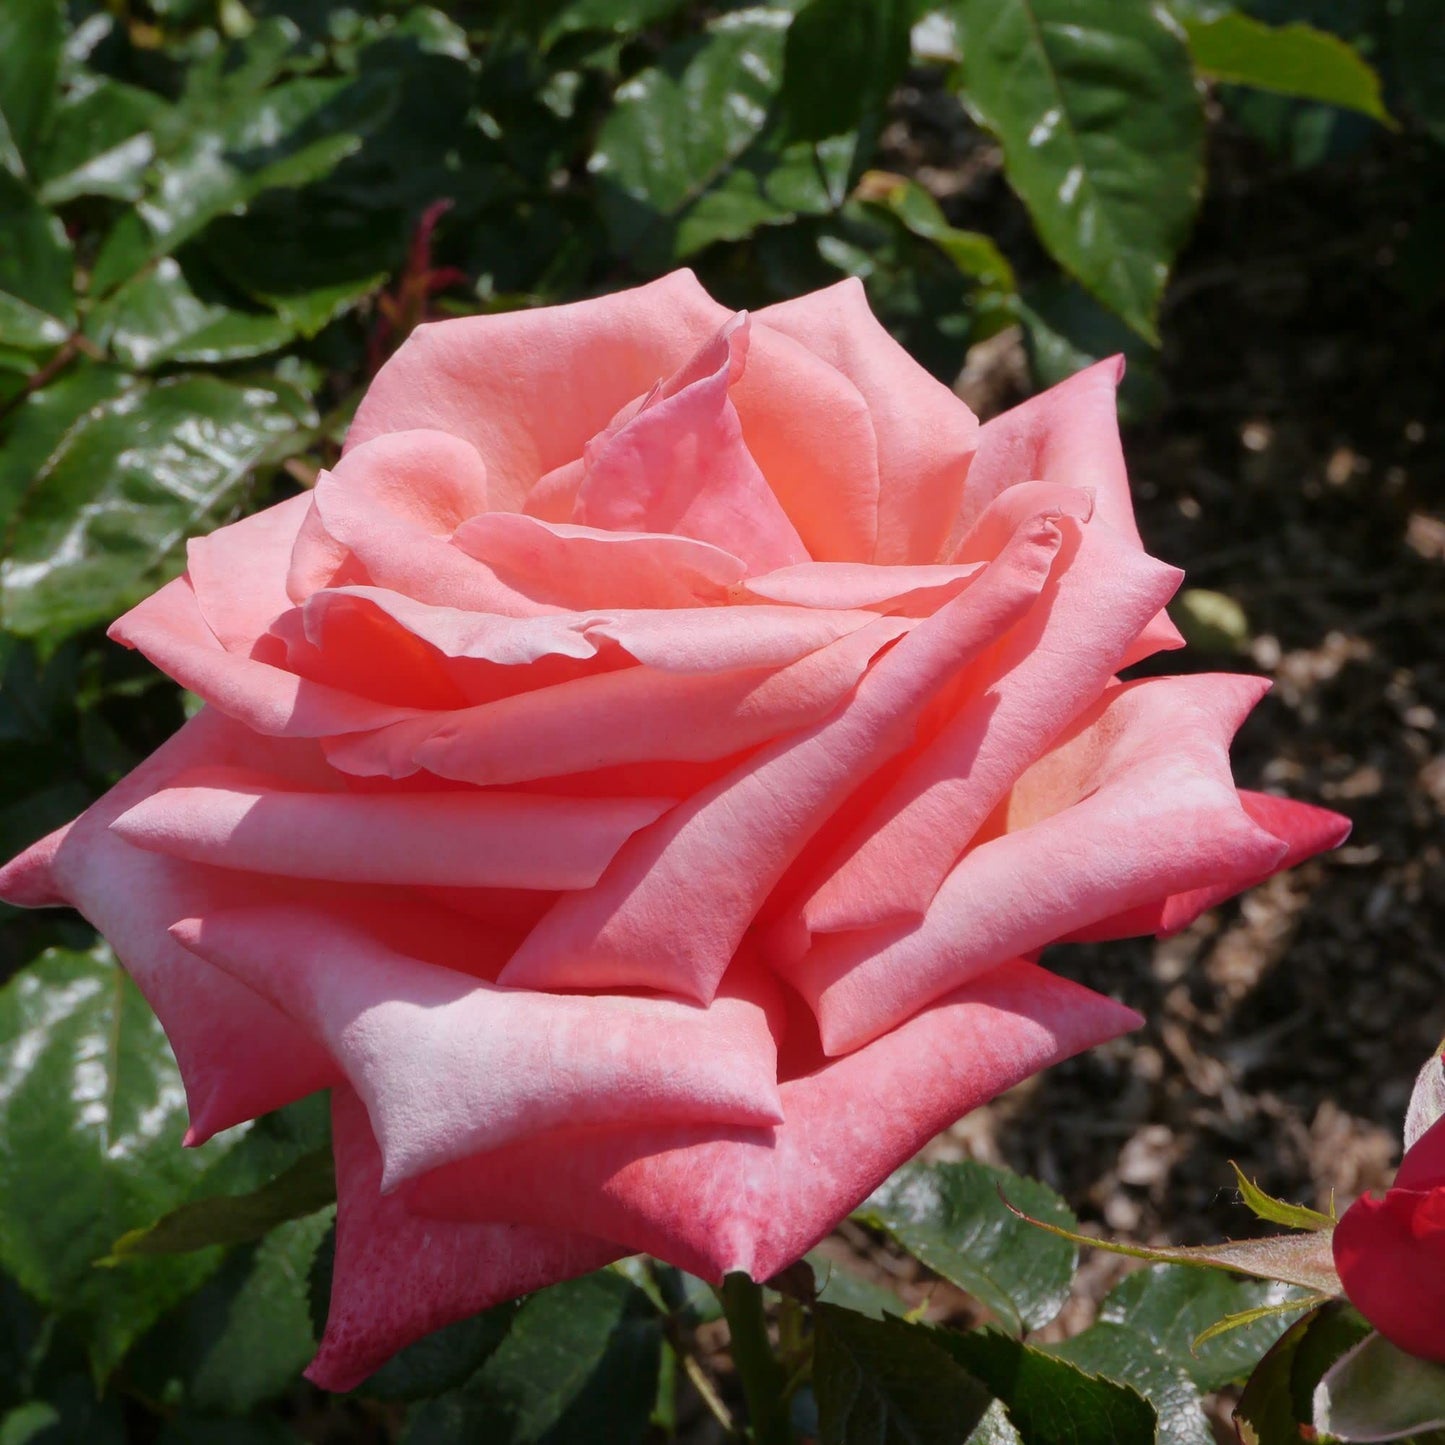 Rose Plants - Hybrid Tea - 'Silver Jubilee' - 1 x Full Plant in 5L Pot